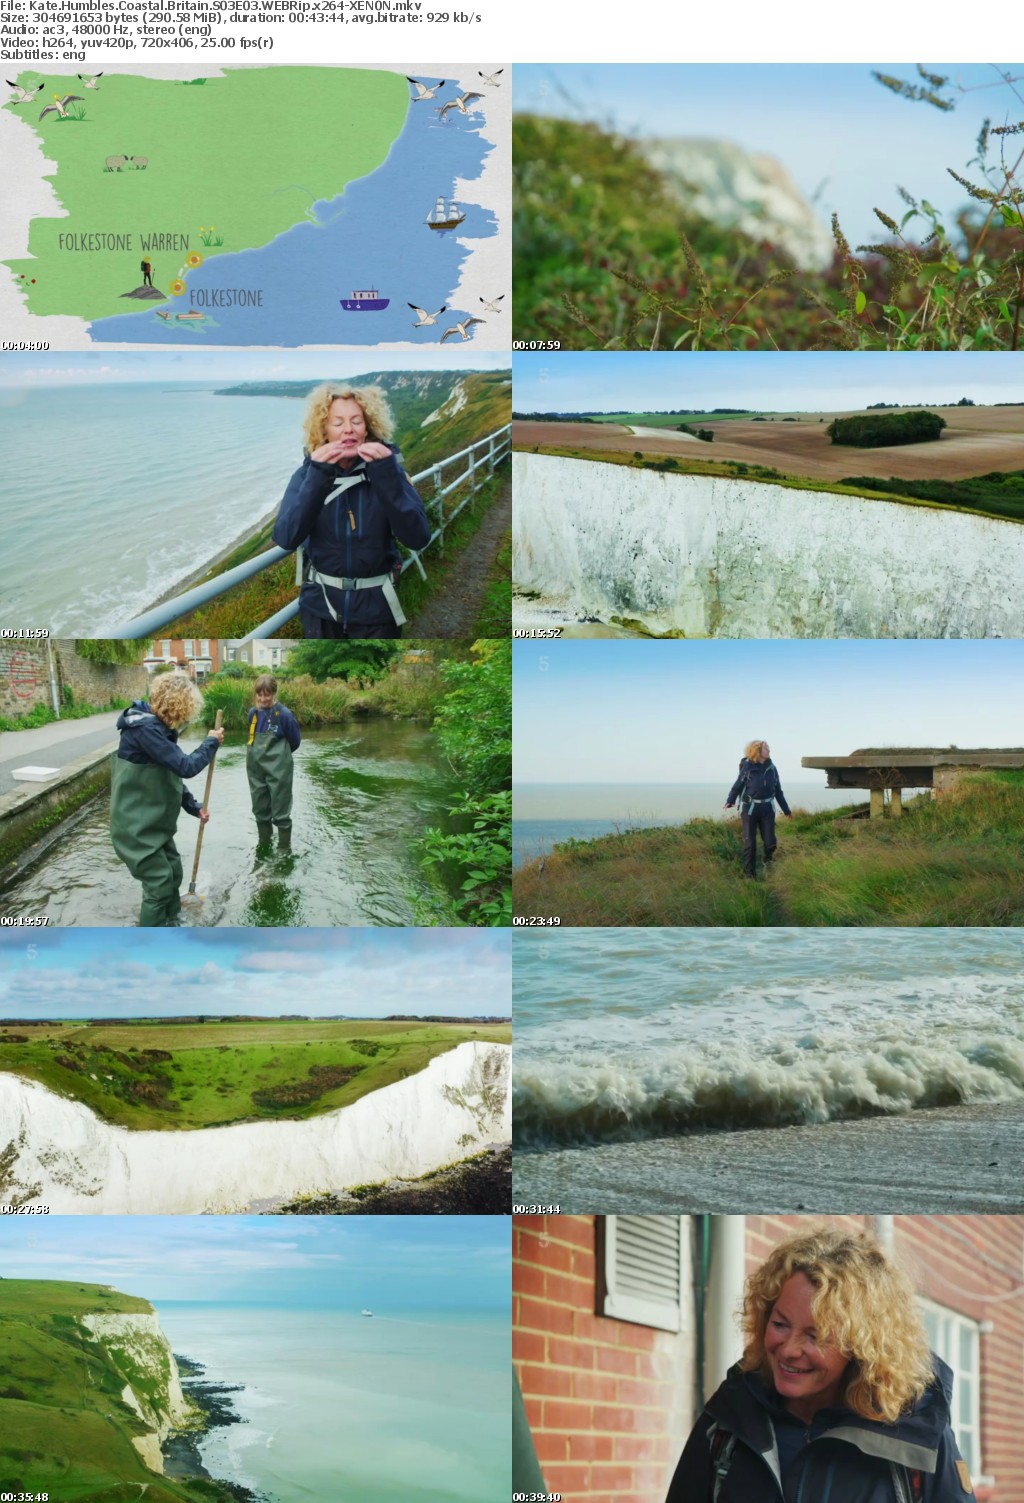 Kate Humbles Coastal Britain S03E03 WEBRip x264-XEN0N